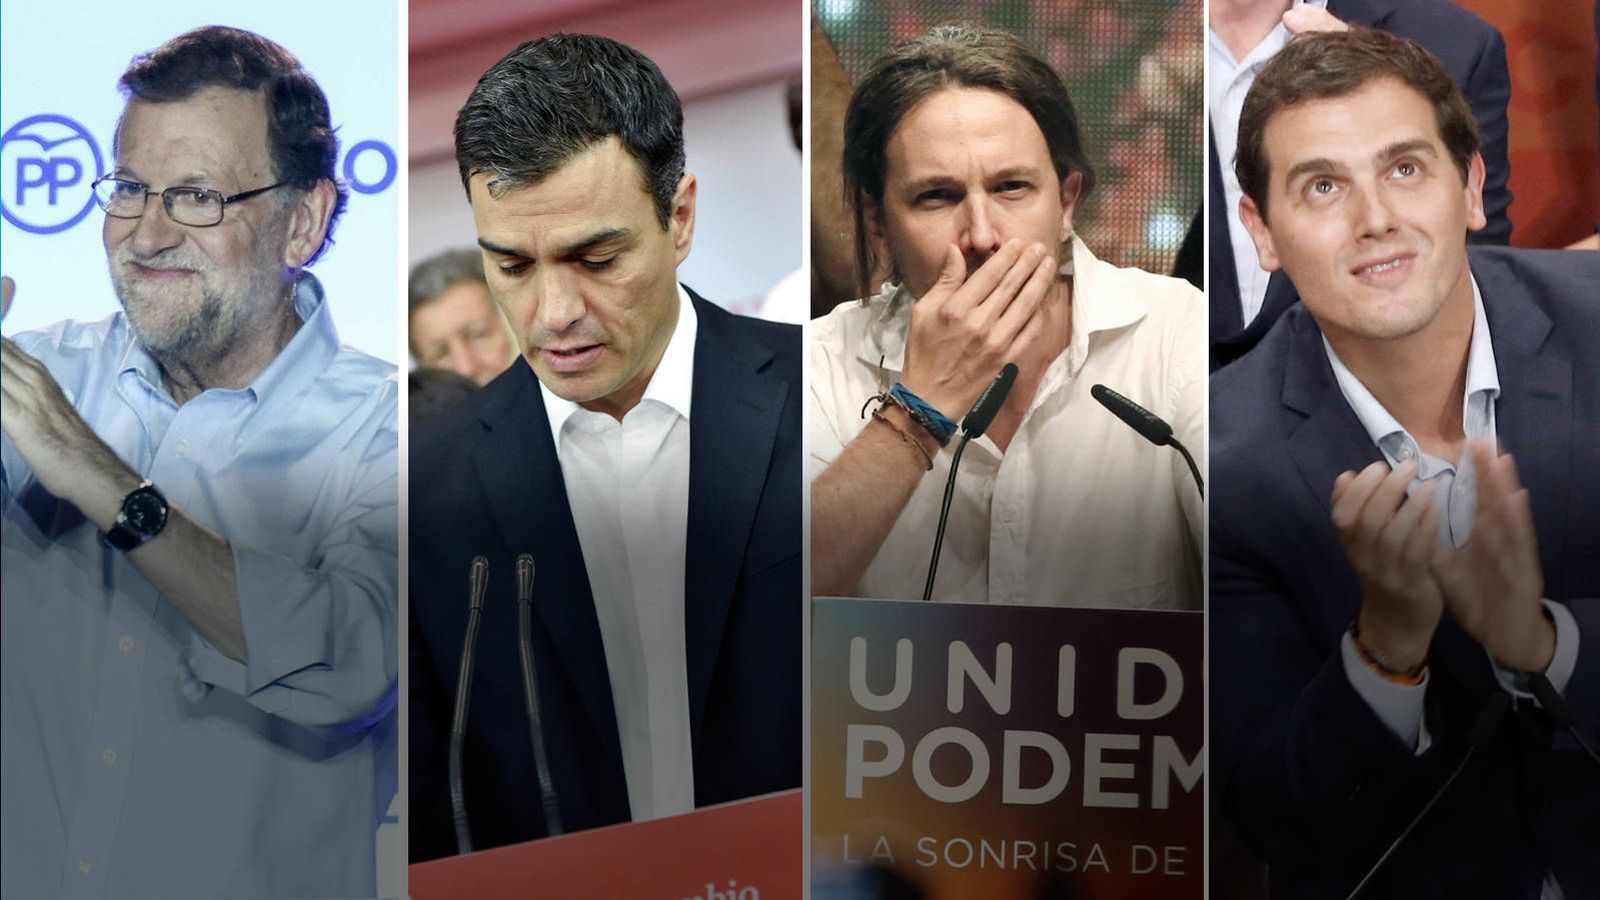 Foto: Elecciones Generales 2016: Mariano Rajoy (Partido Popular), Pedro Sánchez (PSOE), Pablo Iglesias (Unidos Podemos) y Albert Rivera (Ciudadanos)